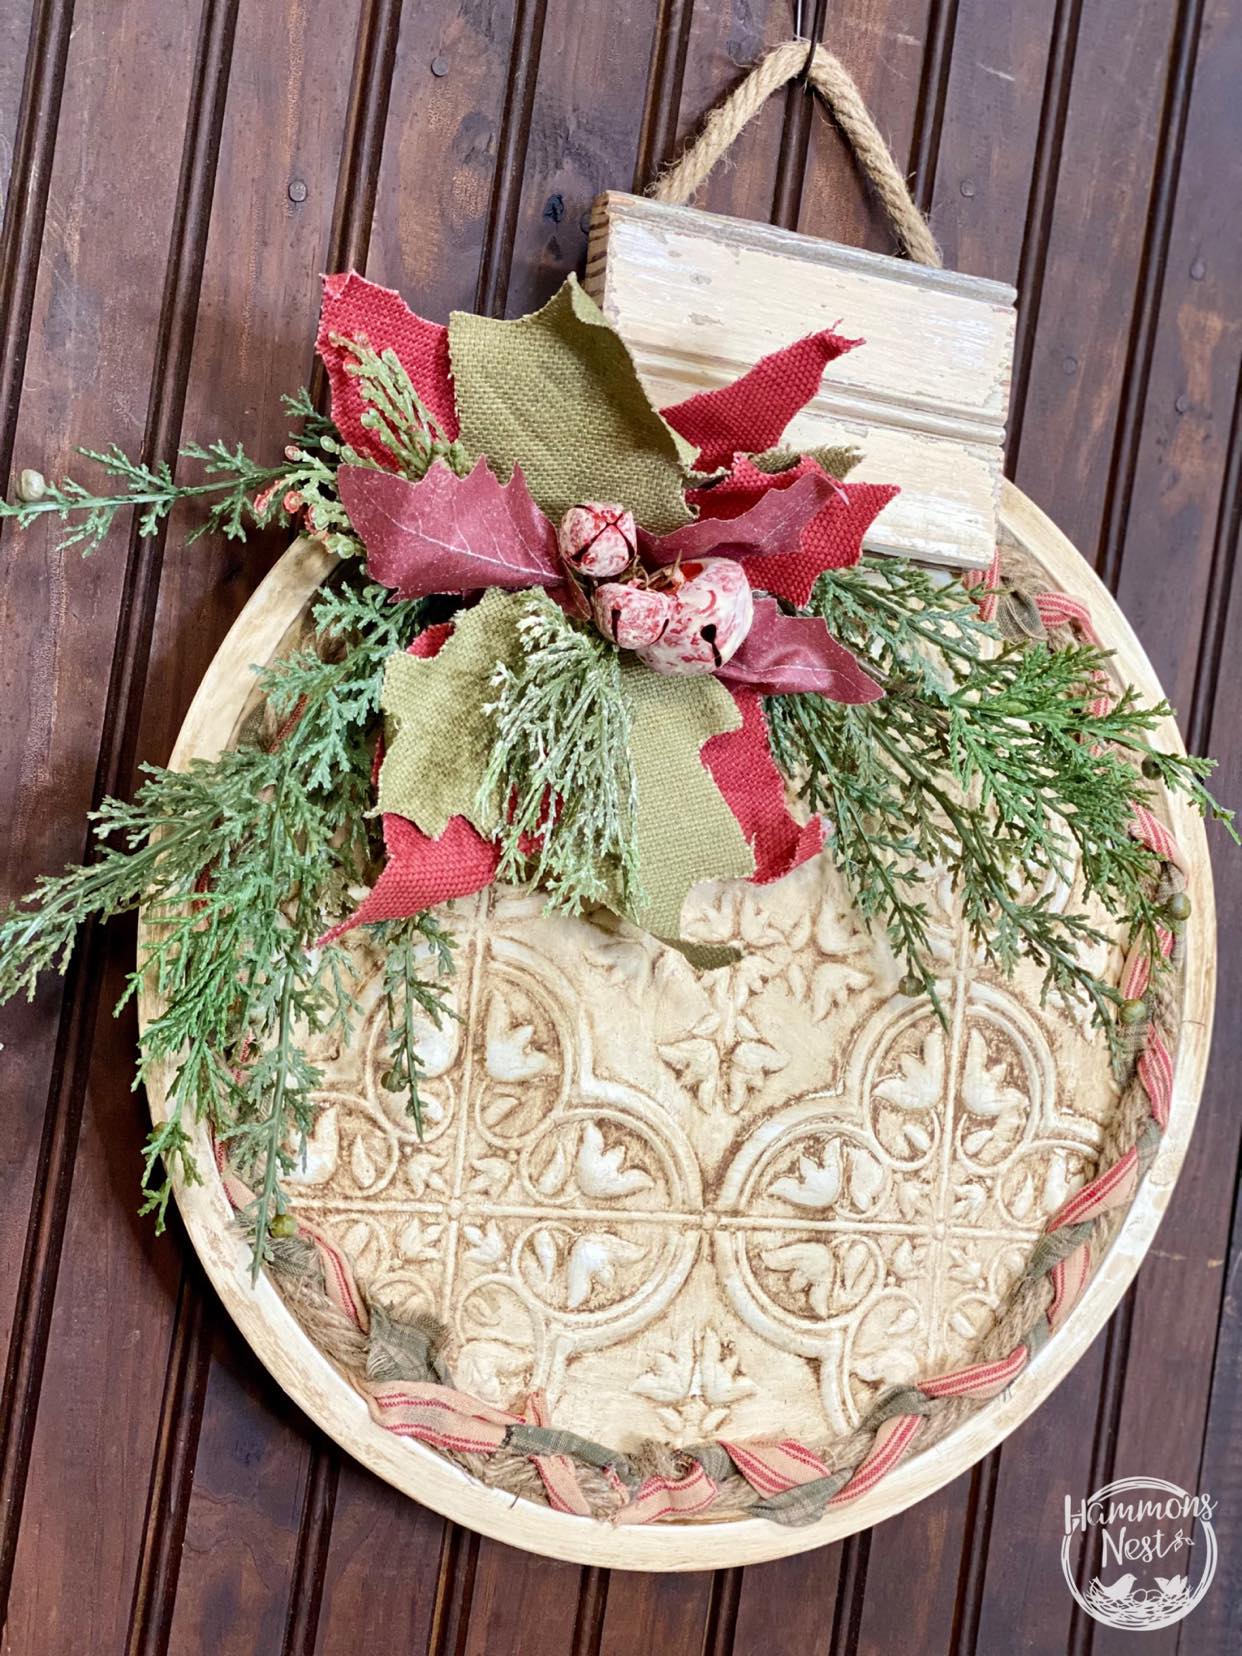 Pizza Pan & Embossed Tile Christmas Ornament Decor - Hammons Nest